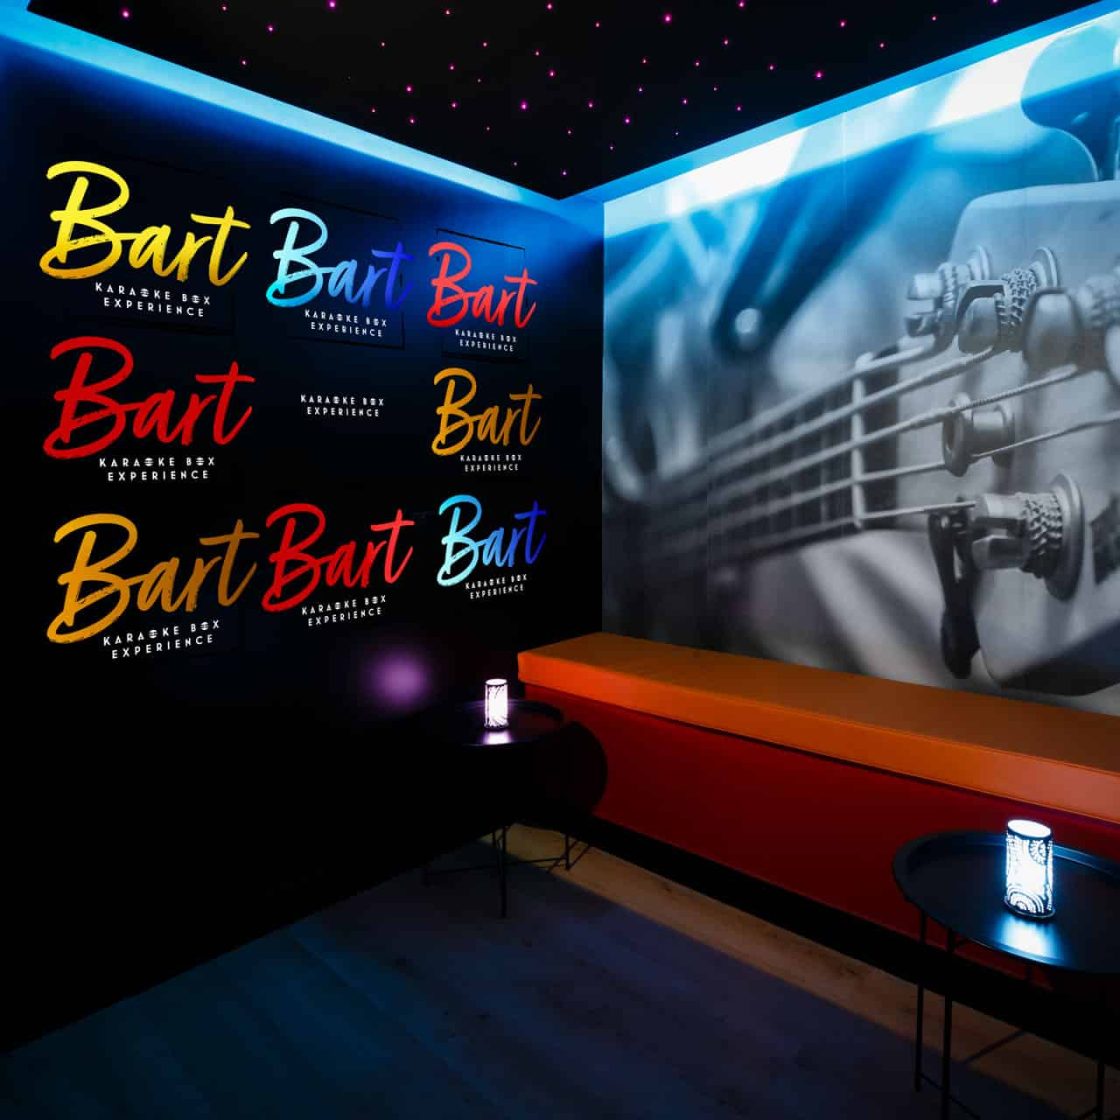 bart-karaoke-box-paris-3-salon-rock-2